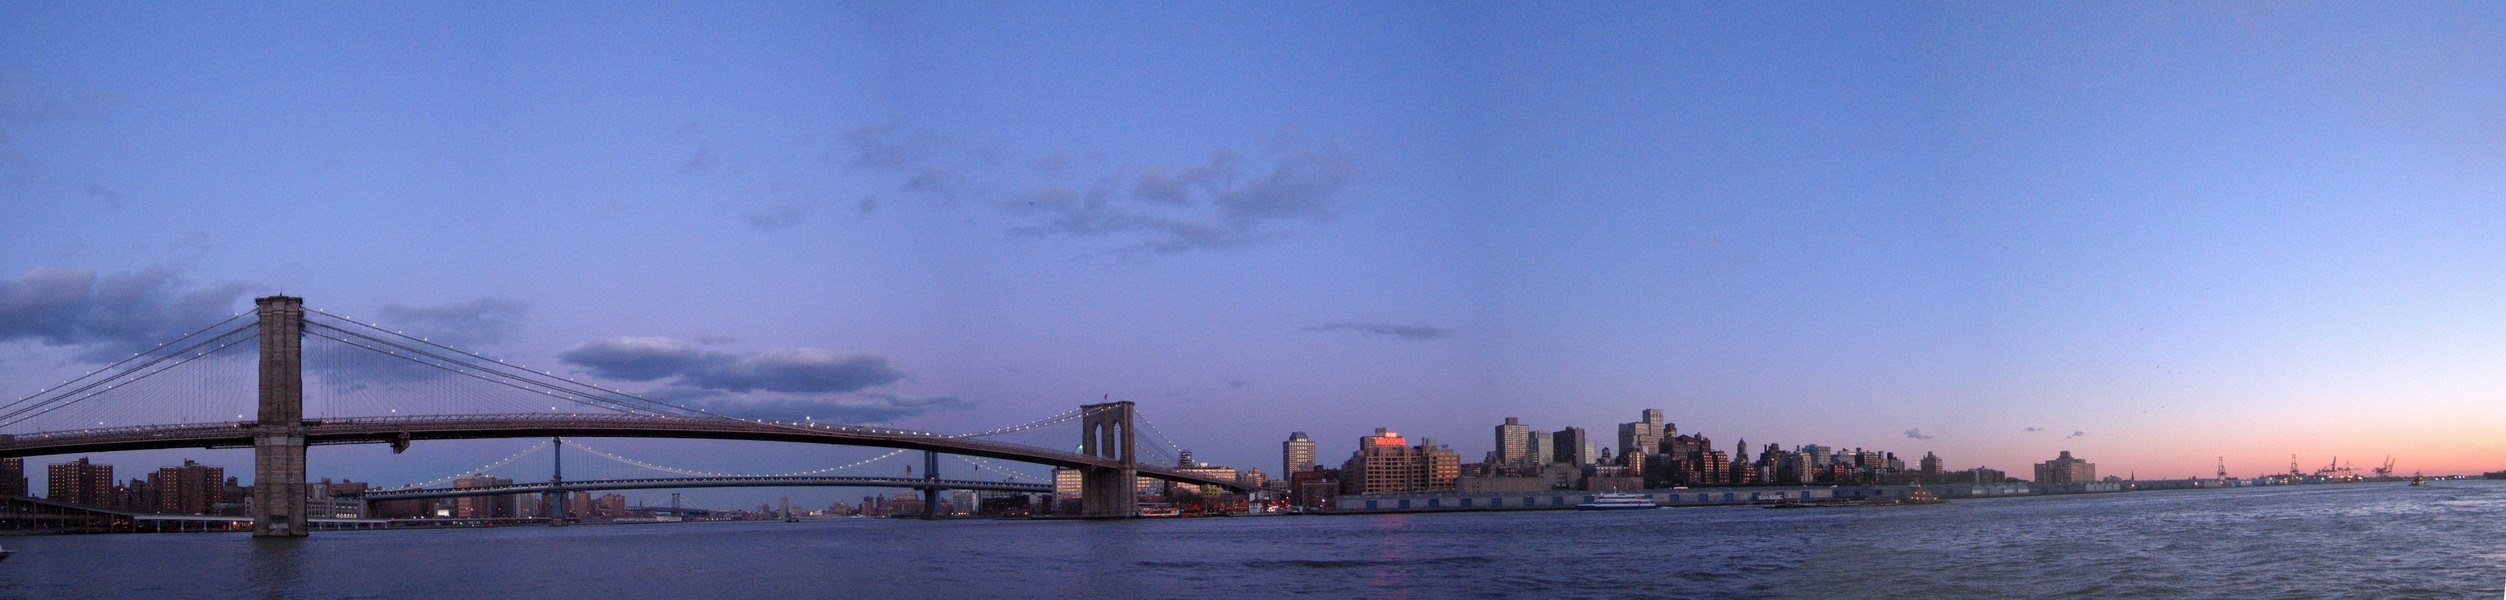 Brooklynský Most - most do Brooklynu (Február 2006)